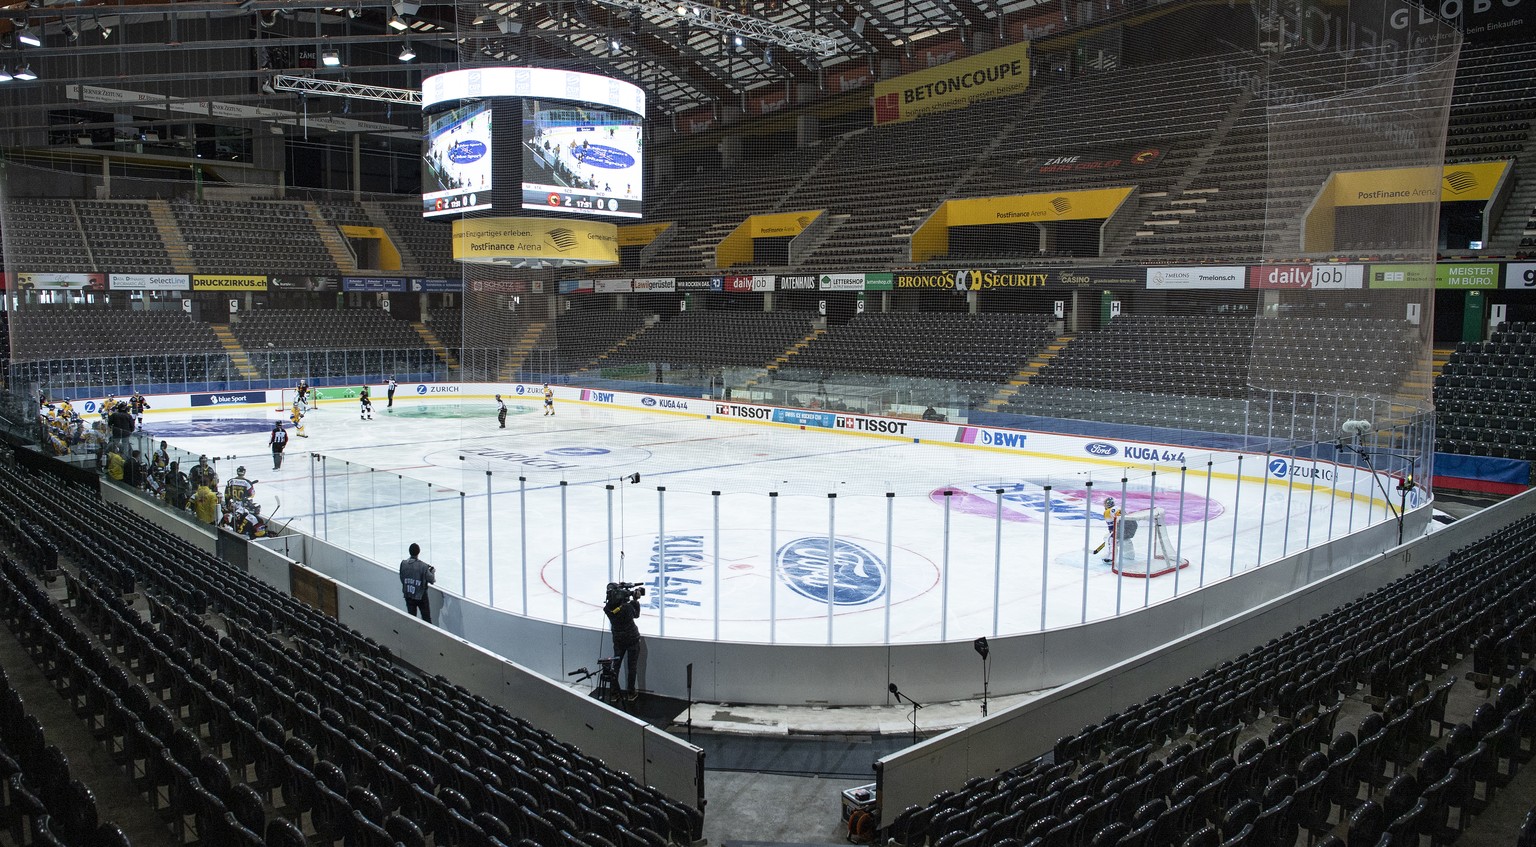 Sicht in die leere Halle im Eishockey Cup Achtelfinalspiel zwischen dem SC Bern und dem HC Davos, am Sonntag, 25. Oktober 2020, in der PostFinance Arena in Bern. (KEYSTONE/Peter Schneider)